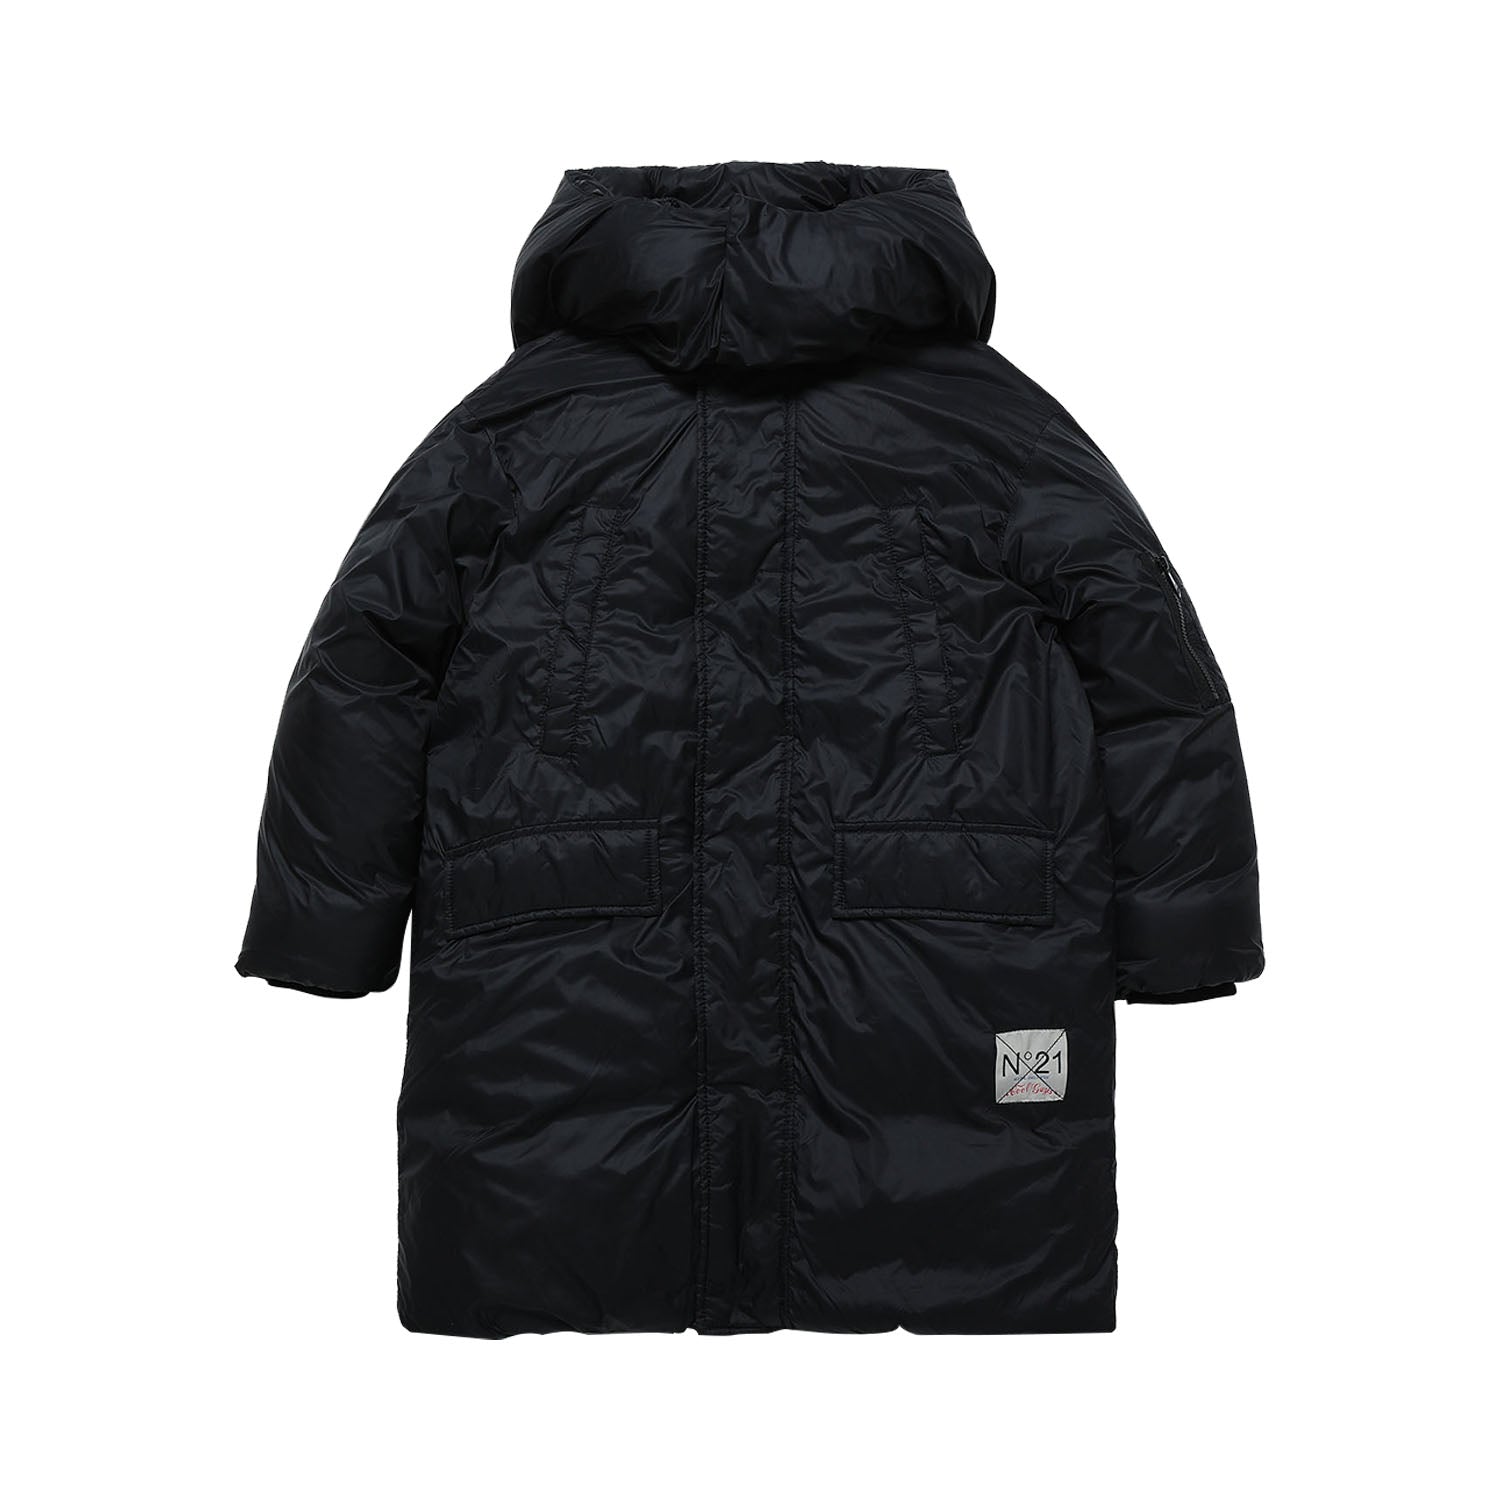 N21 Coat - Black